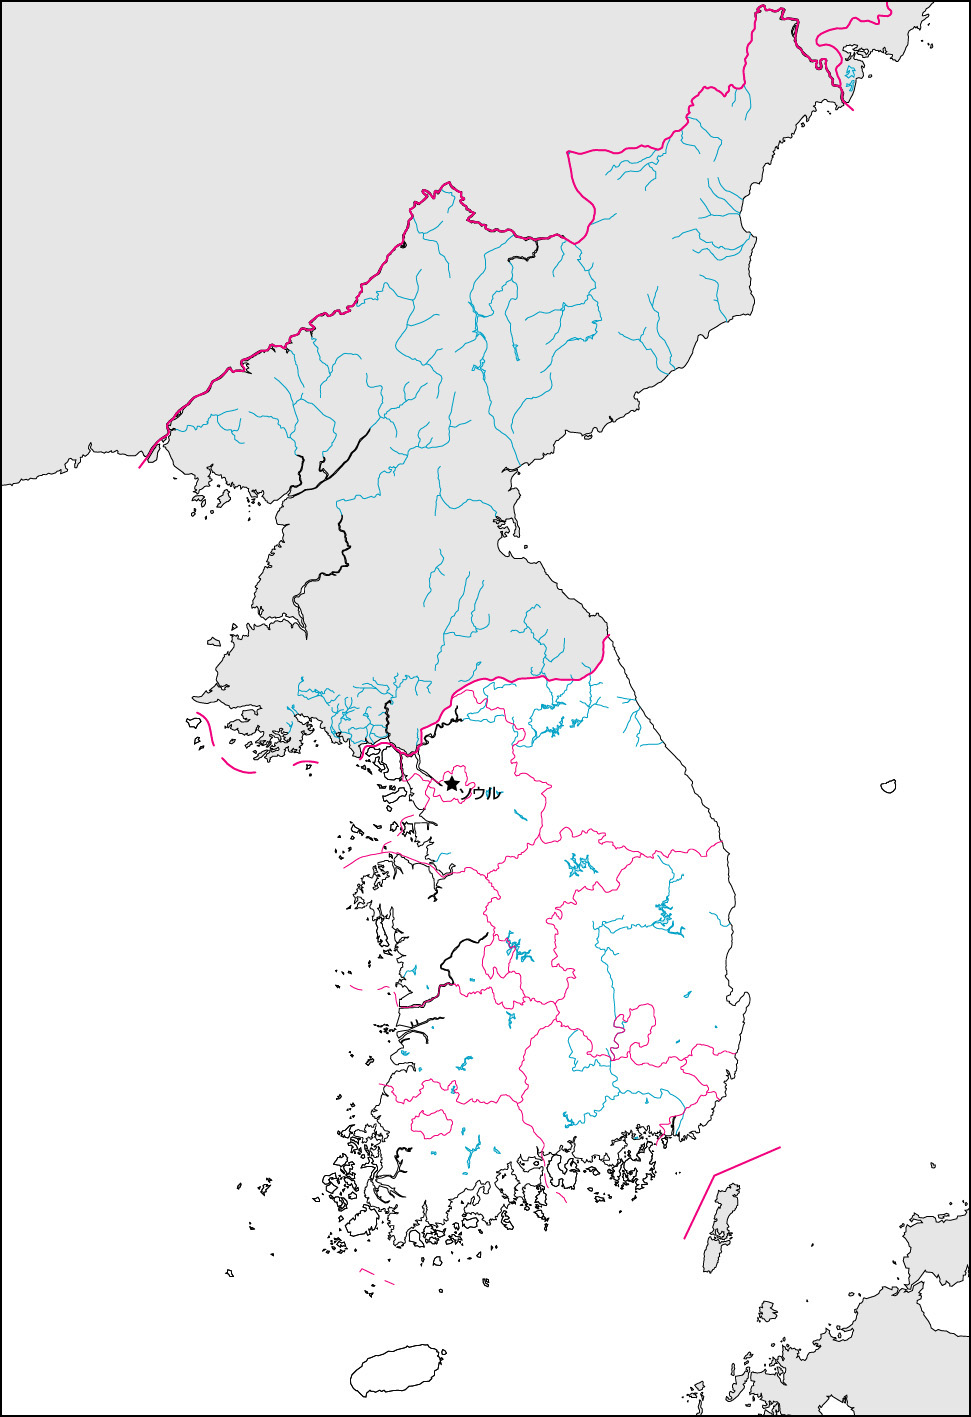 韓国白地図(行政区分・首都・国境記載)の画像